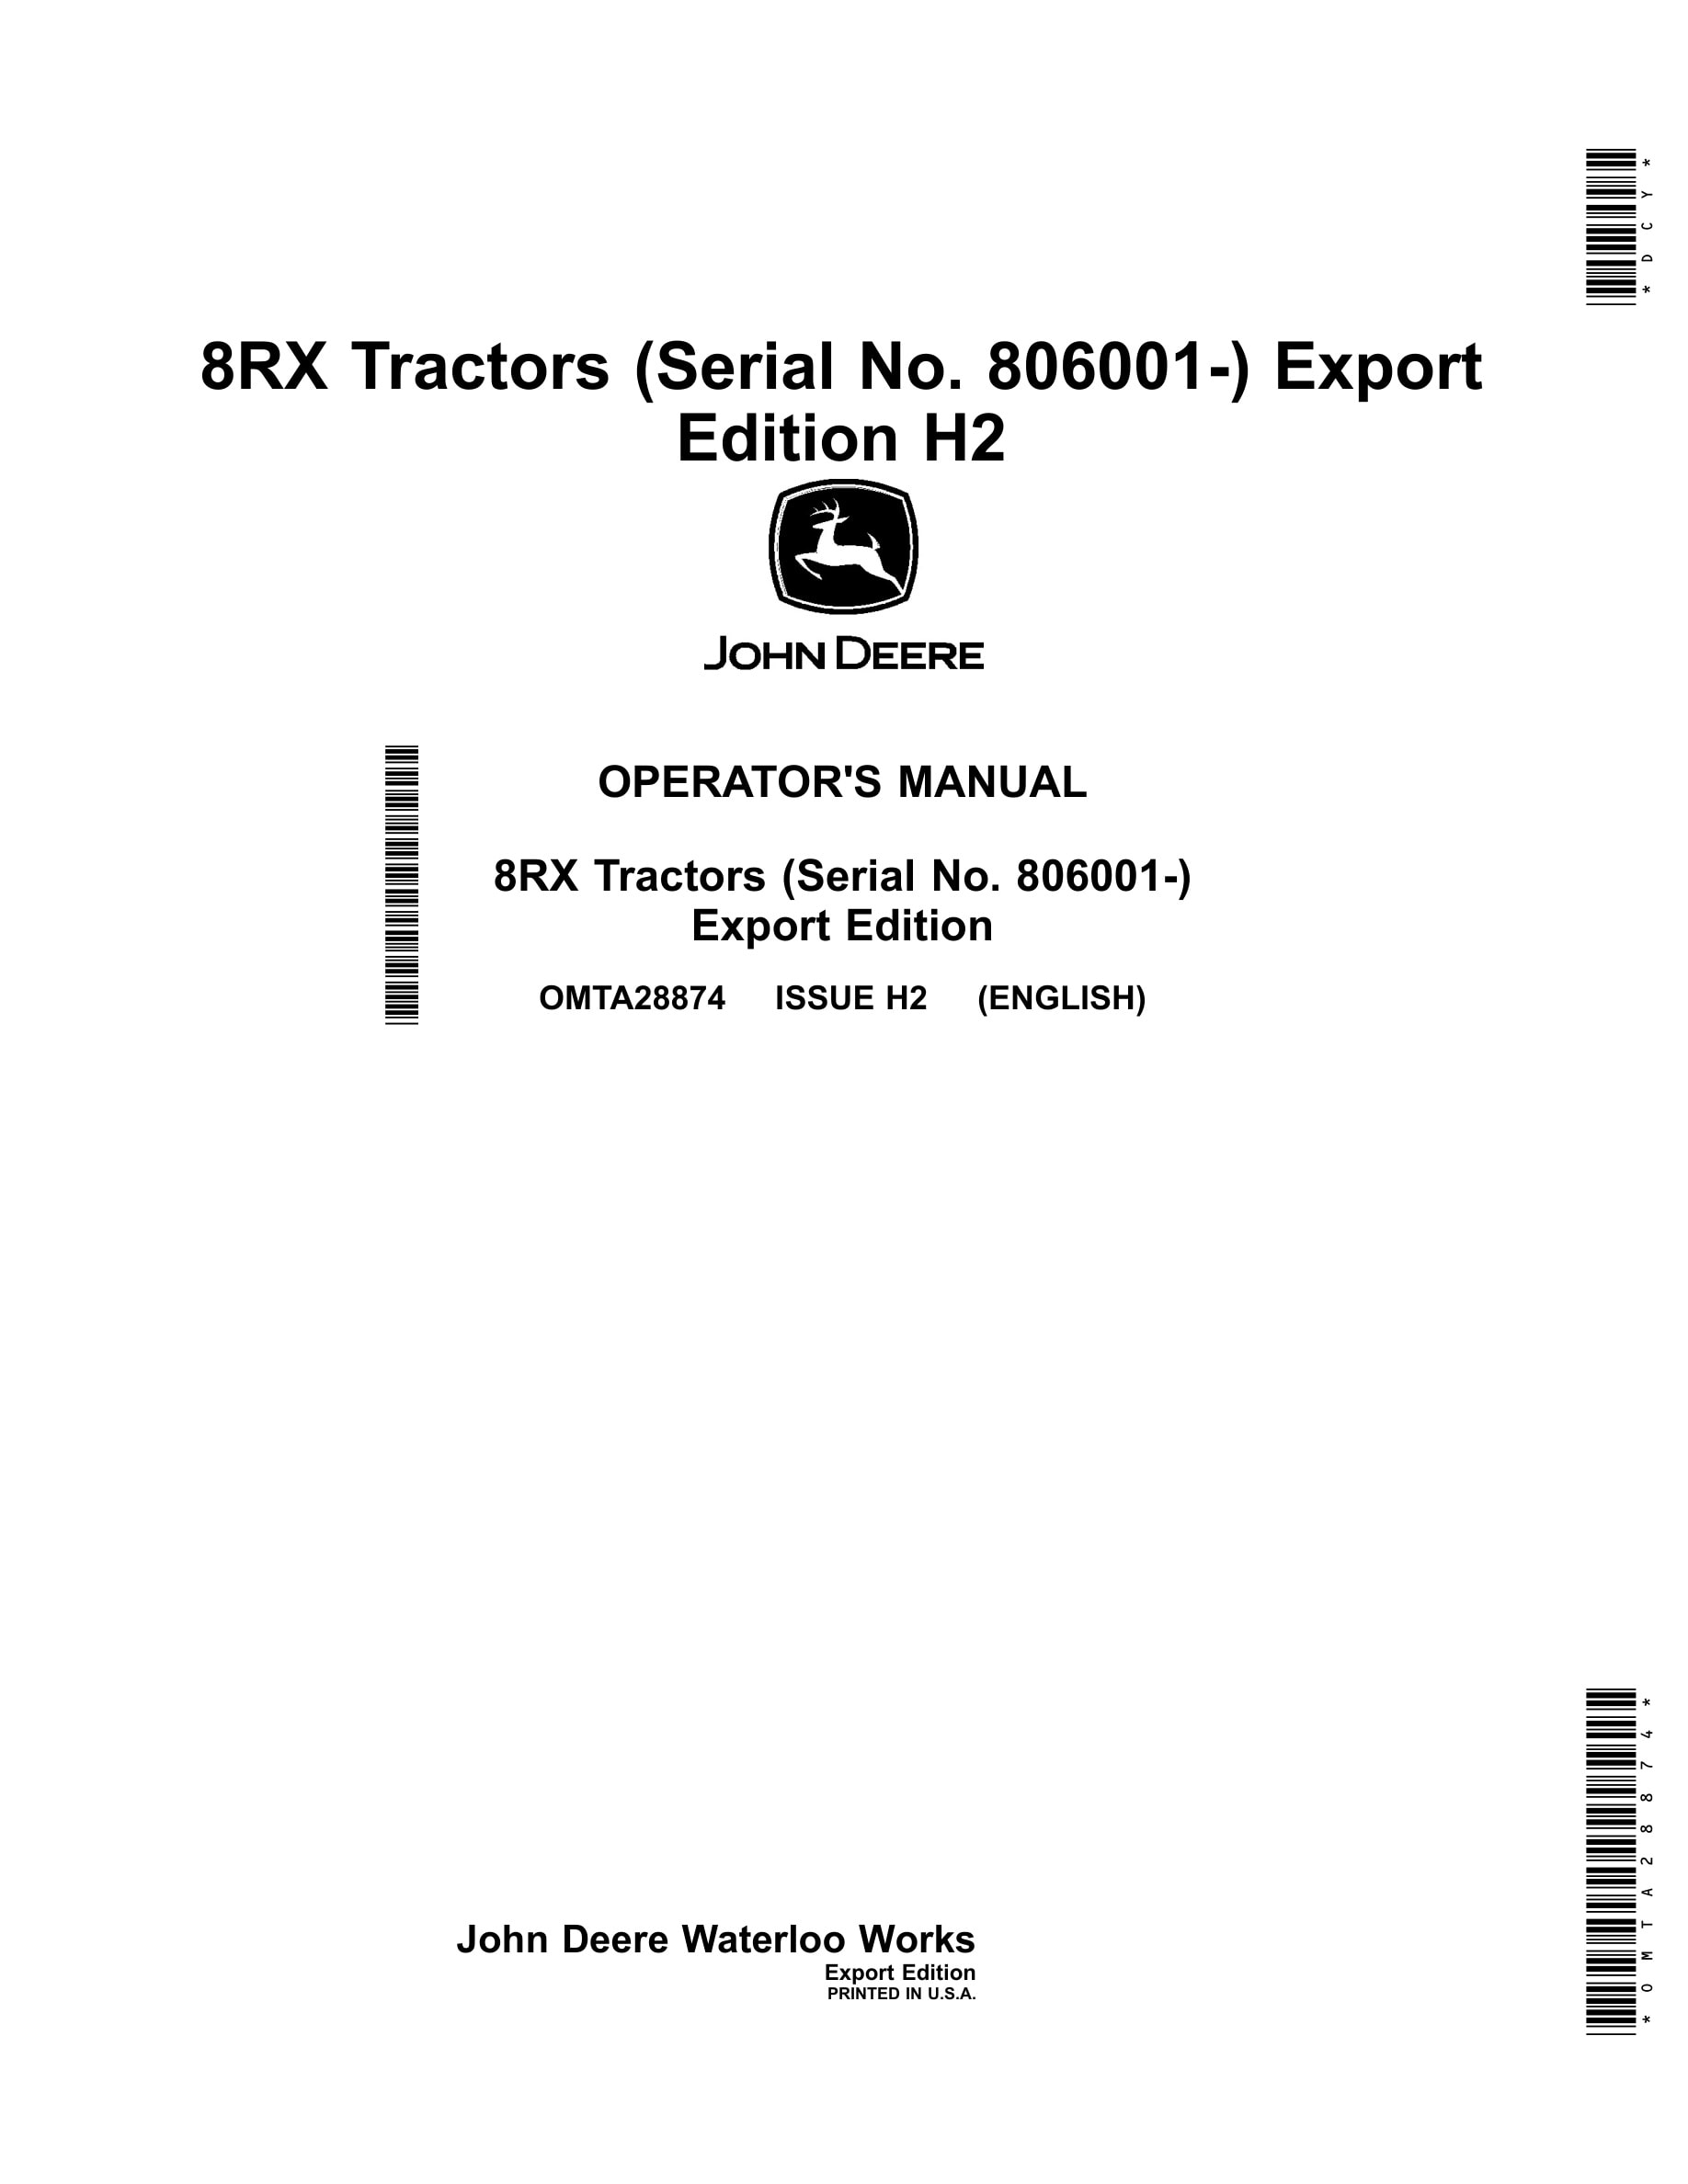 John Deere 8rx Tractors Operator Manuals OMTA28874-1